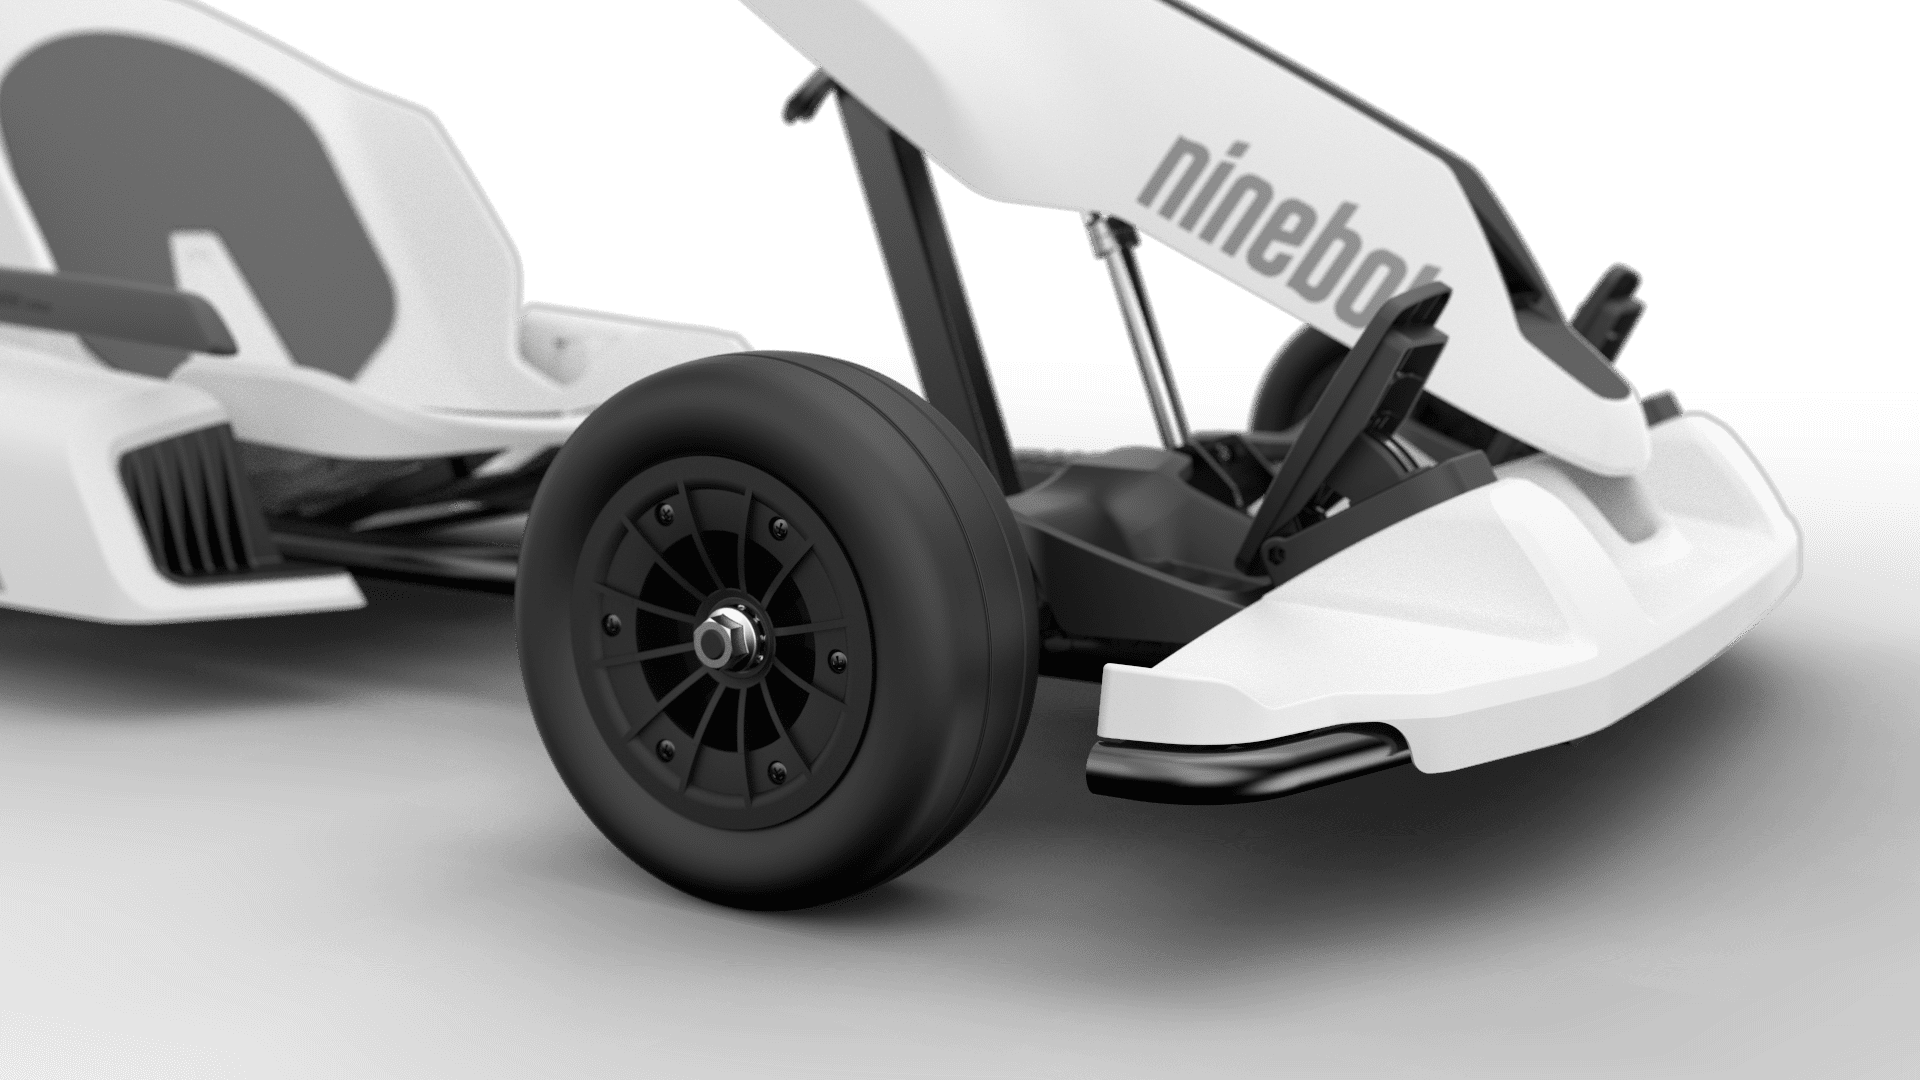 Ninebot_Gokart_detail1_wheel